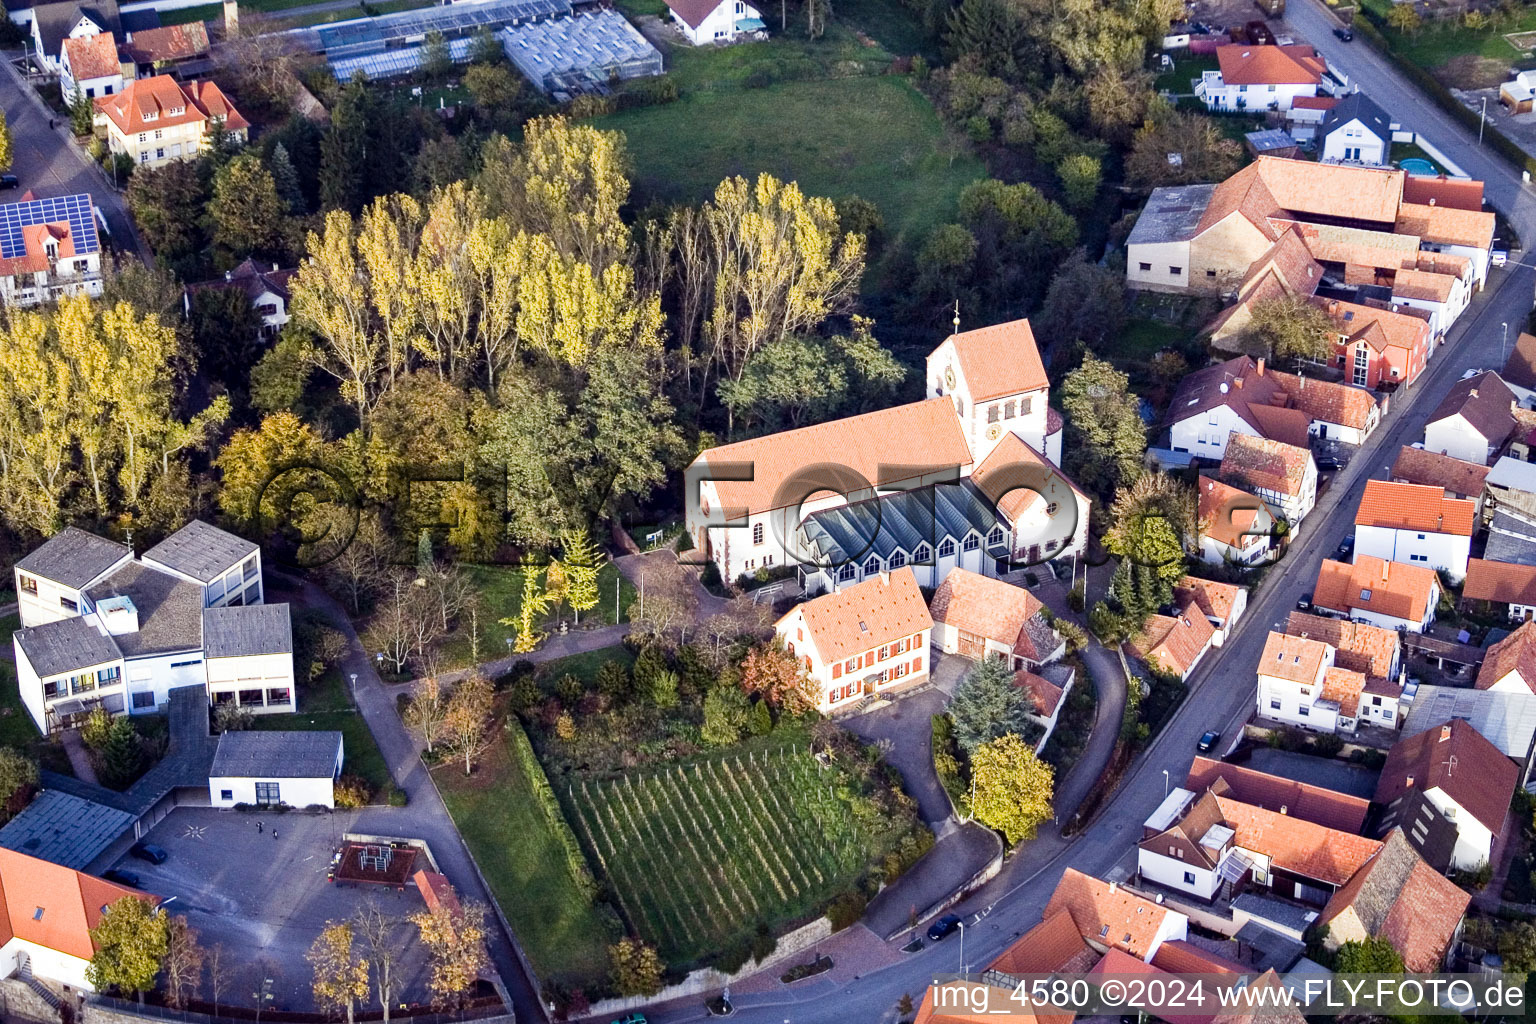 Vue aérienne de Bâtiment d'église au centre du village à Hördt dans le département Rhénanie-Palatinat, Allemagne